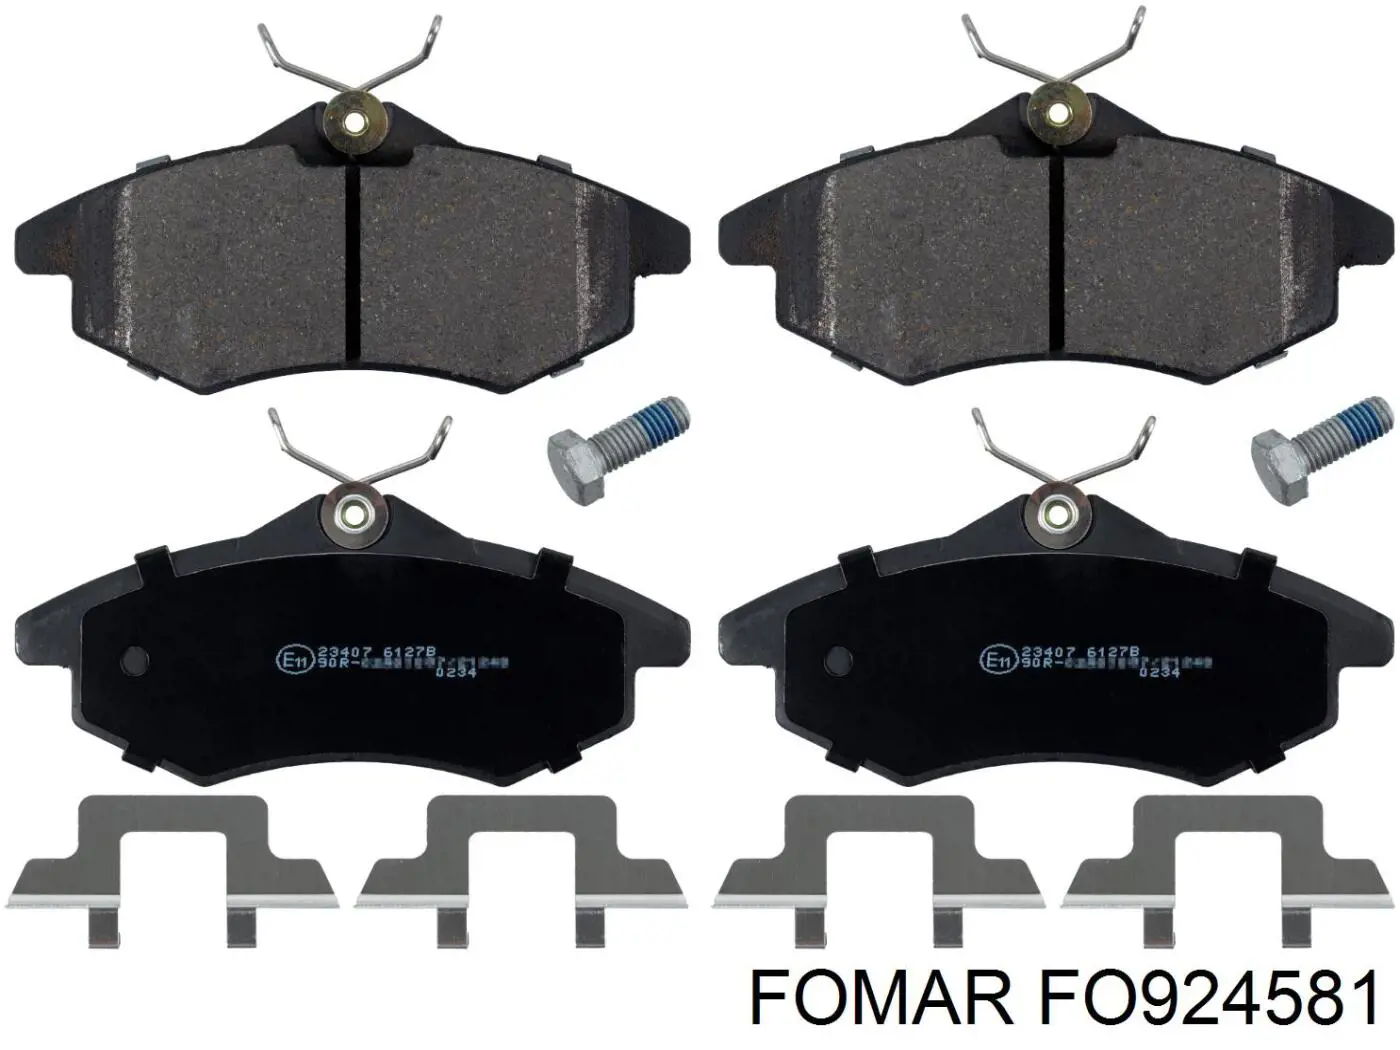 FO 924581 Fomar Roulunds передние тормозные колодки